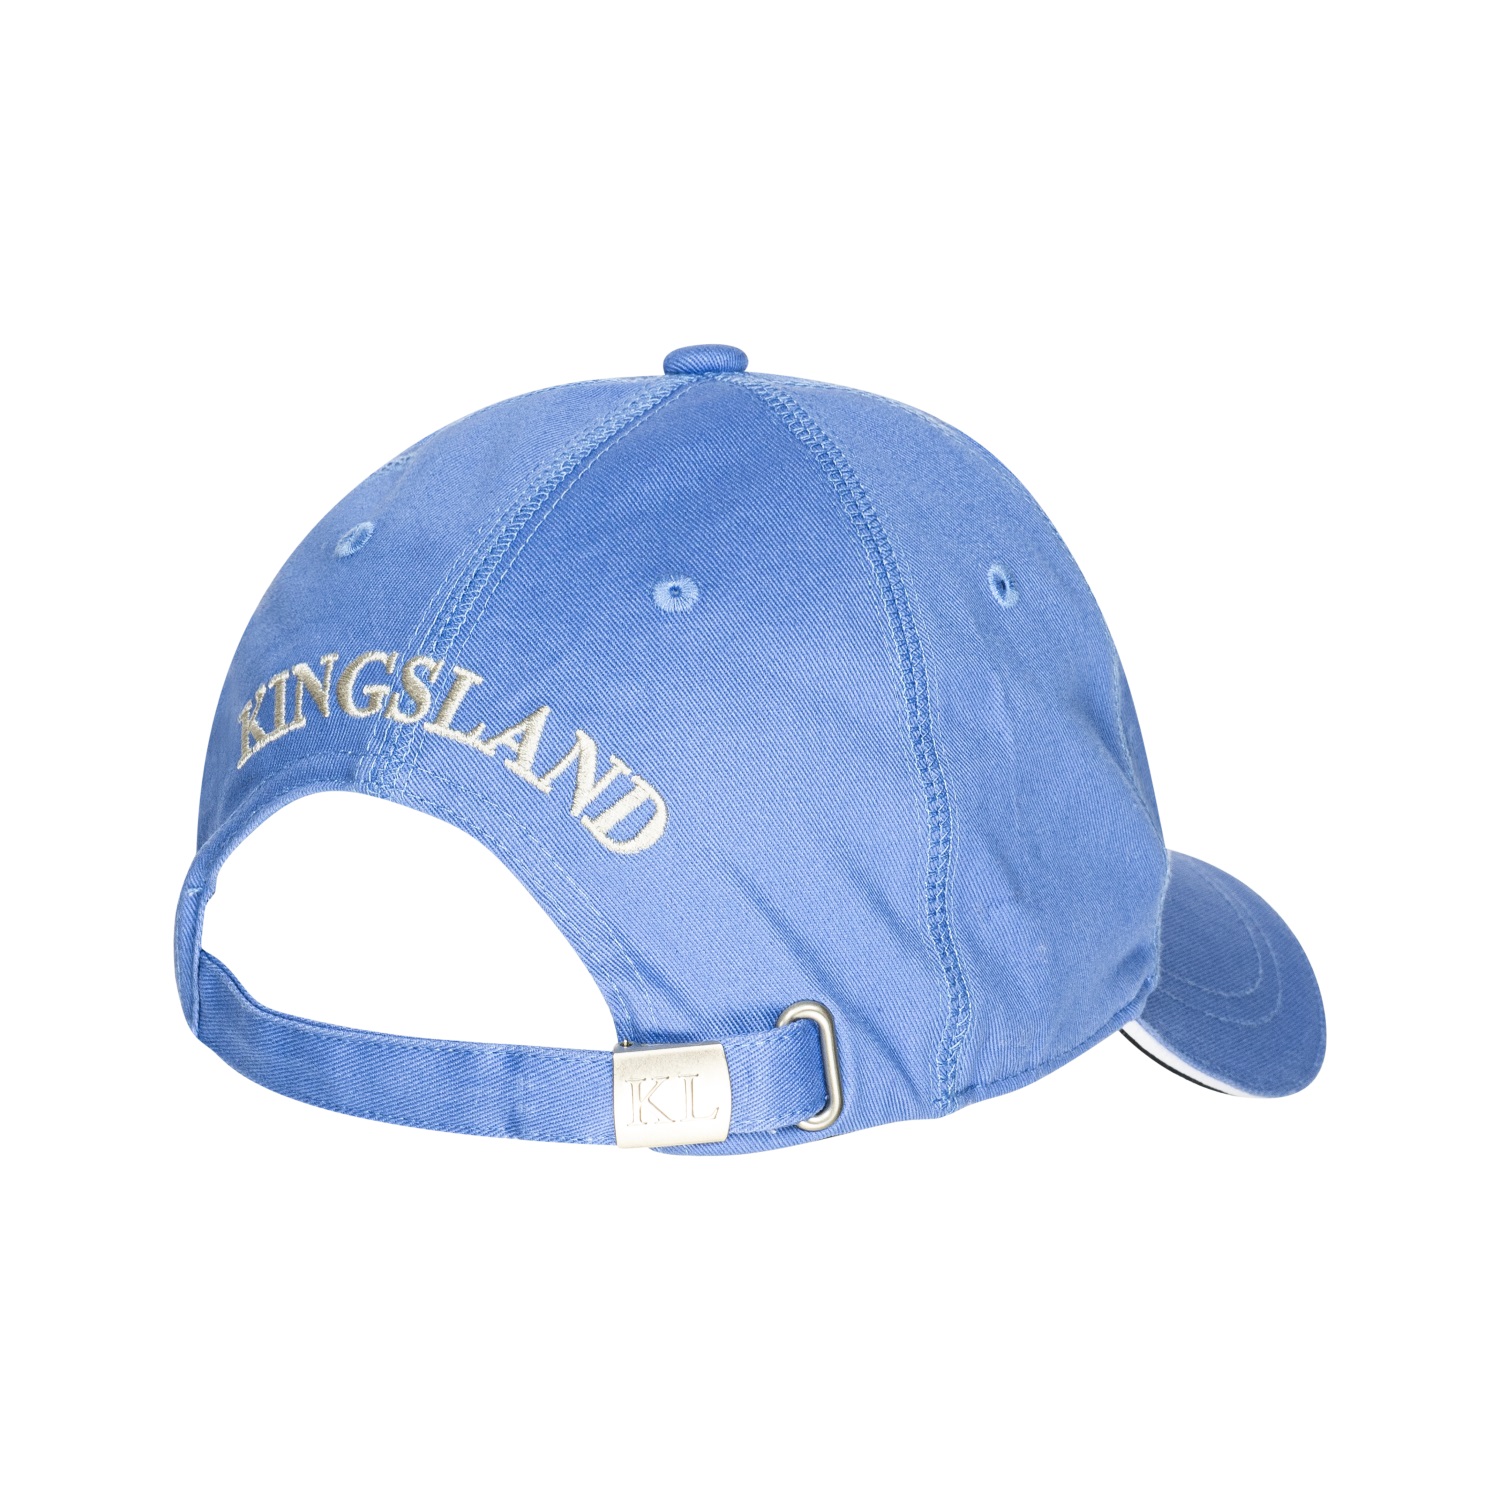 KINGSLAND Unisex Classic Limited Cap, Basecap - grey - onesize - 2